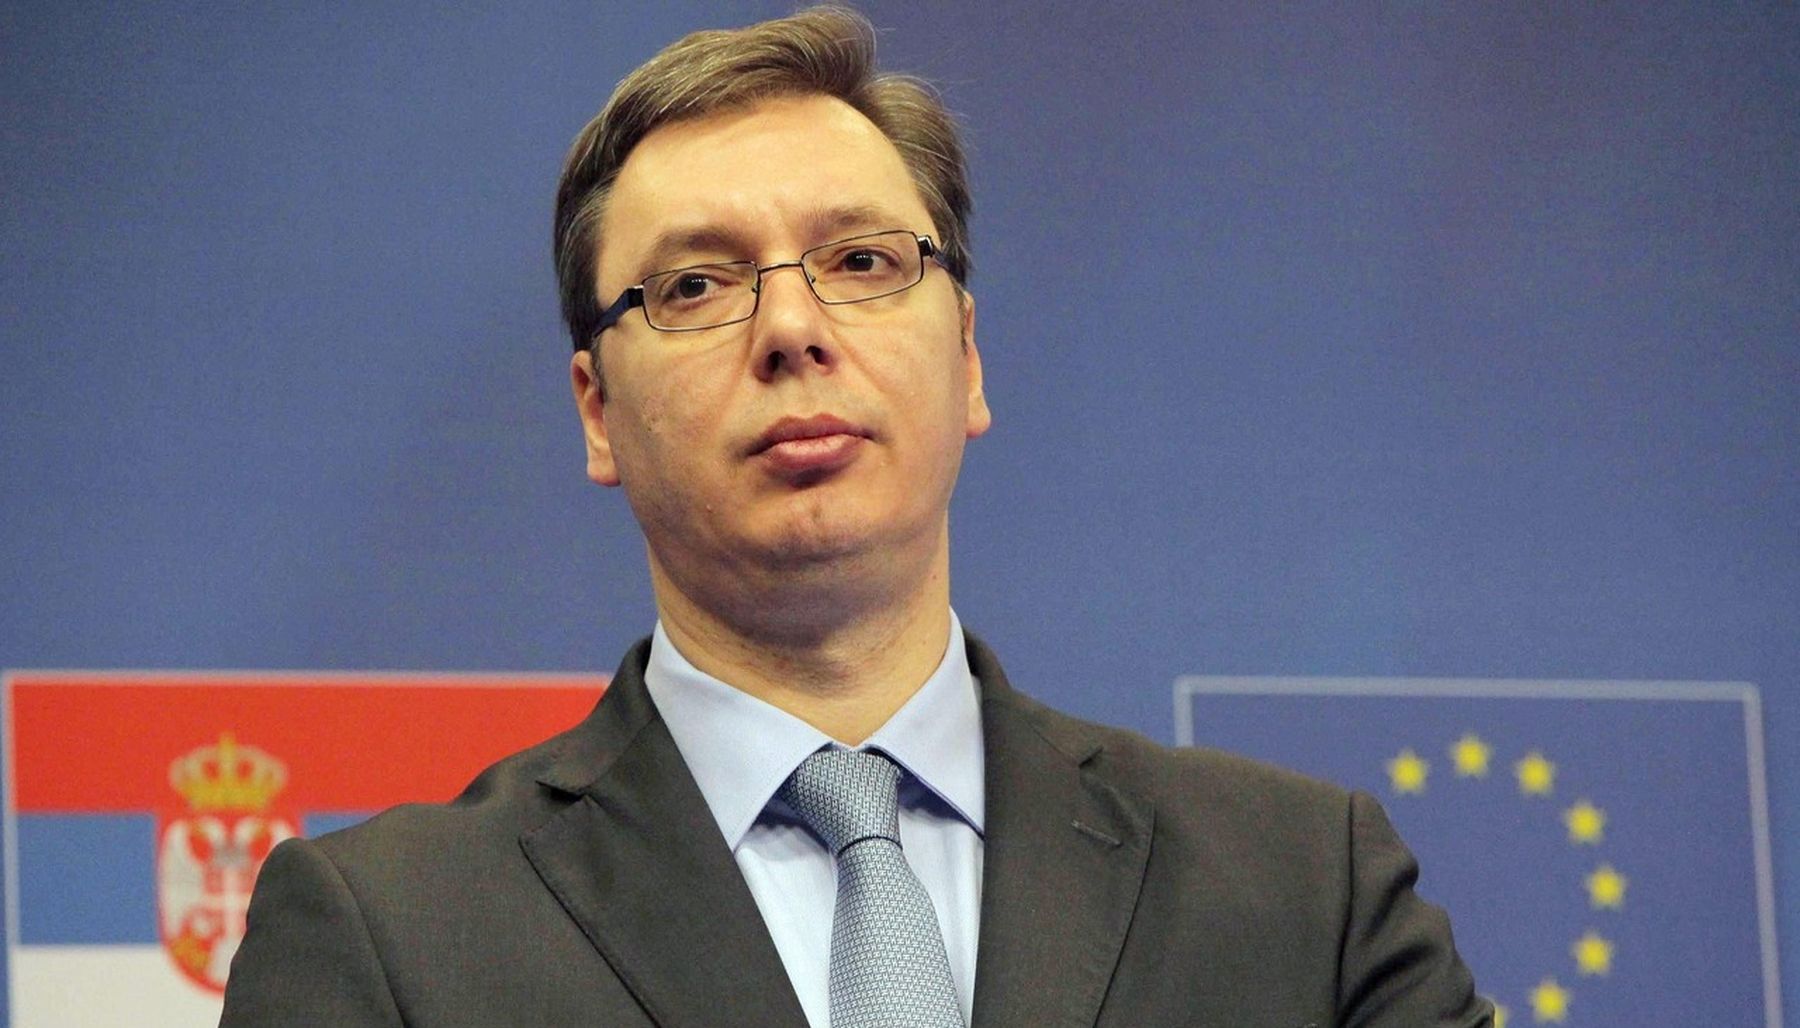 Сербия обвинила ЕС в двойных стандартах в отношении Каталонии и Косово